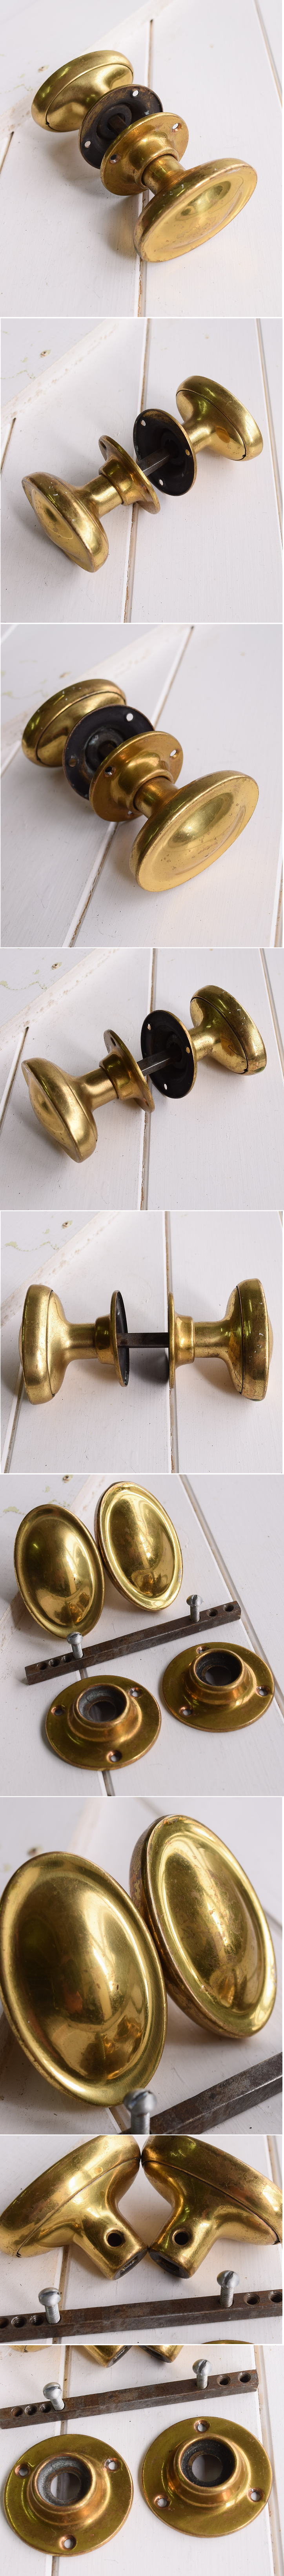 イギリス アンティーク 真鍮製 ドアノブ 建具金物 握り玉 11159